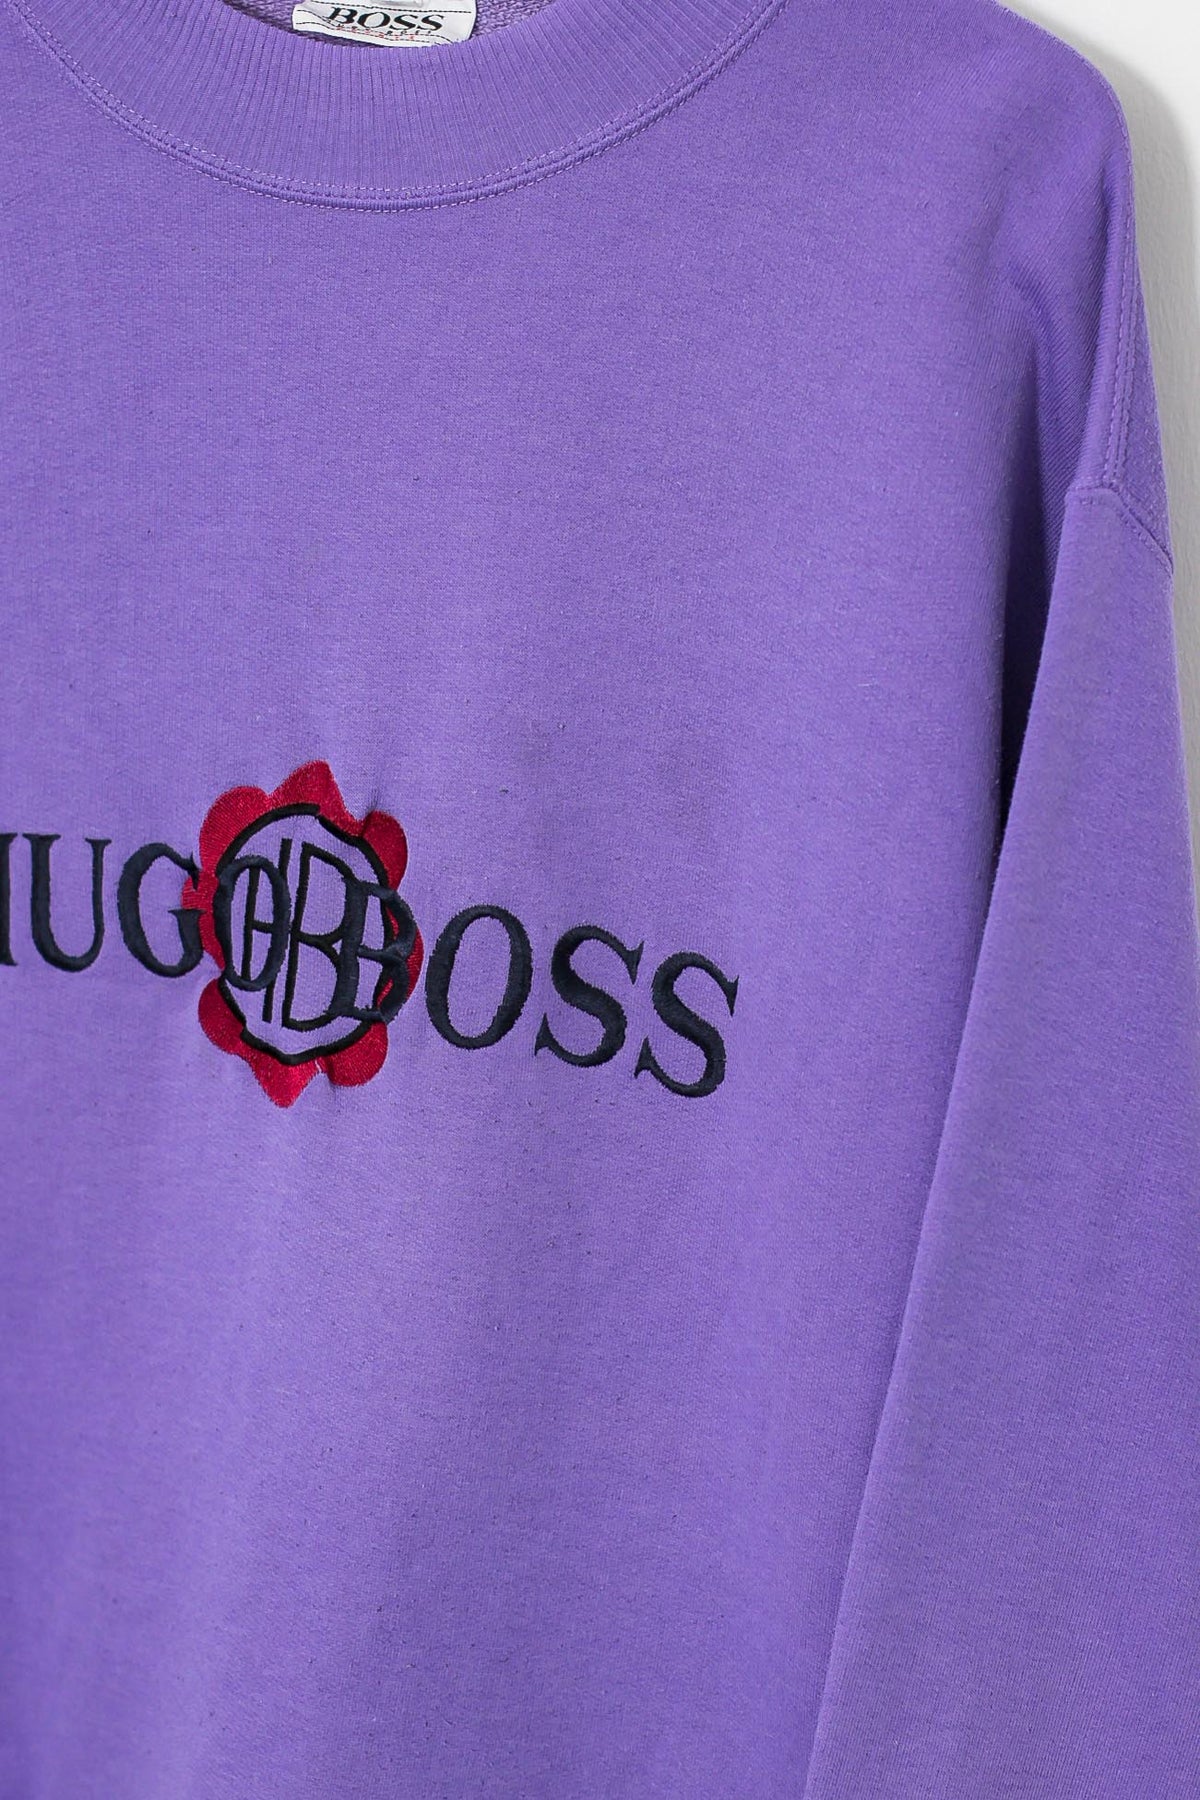 Womens 90s Hugo Boss Sweatshirt (M)